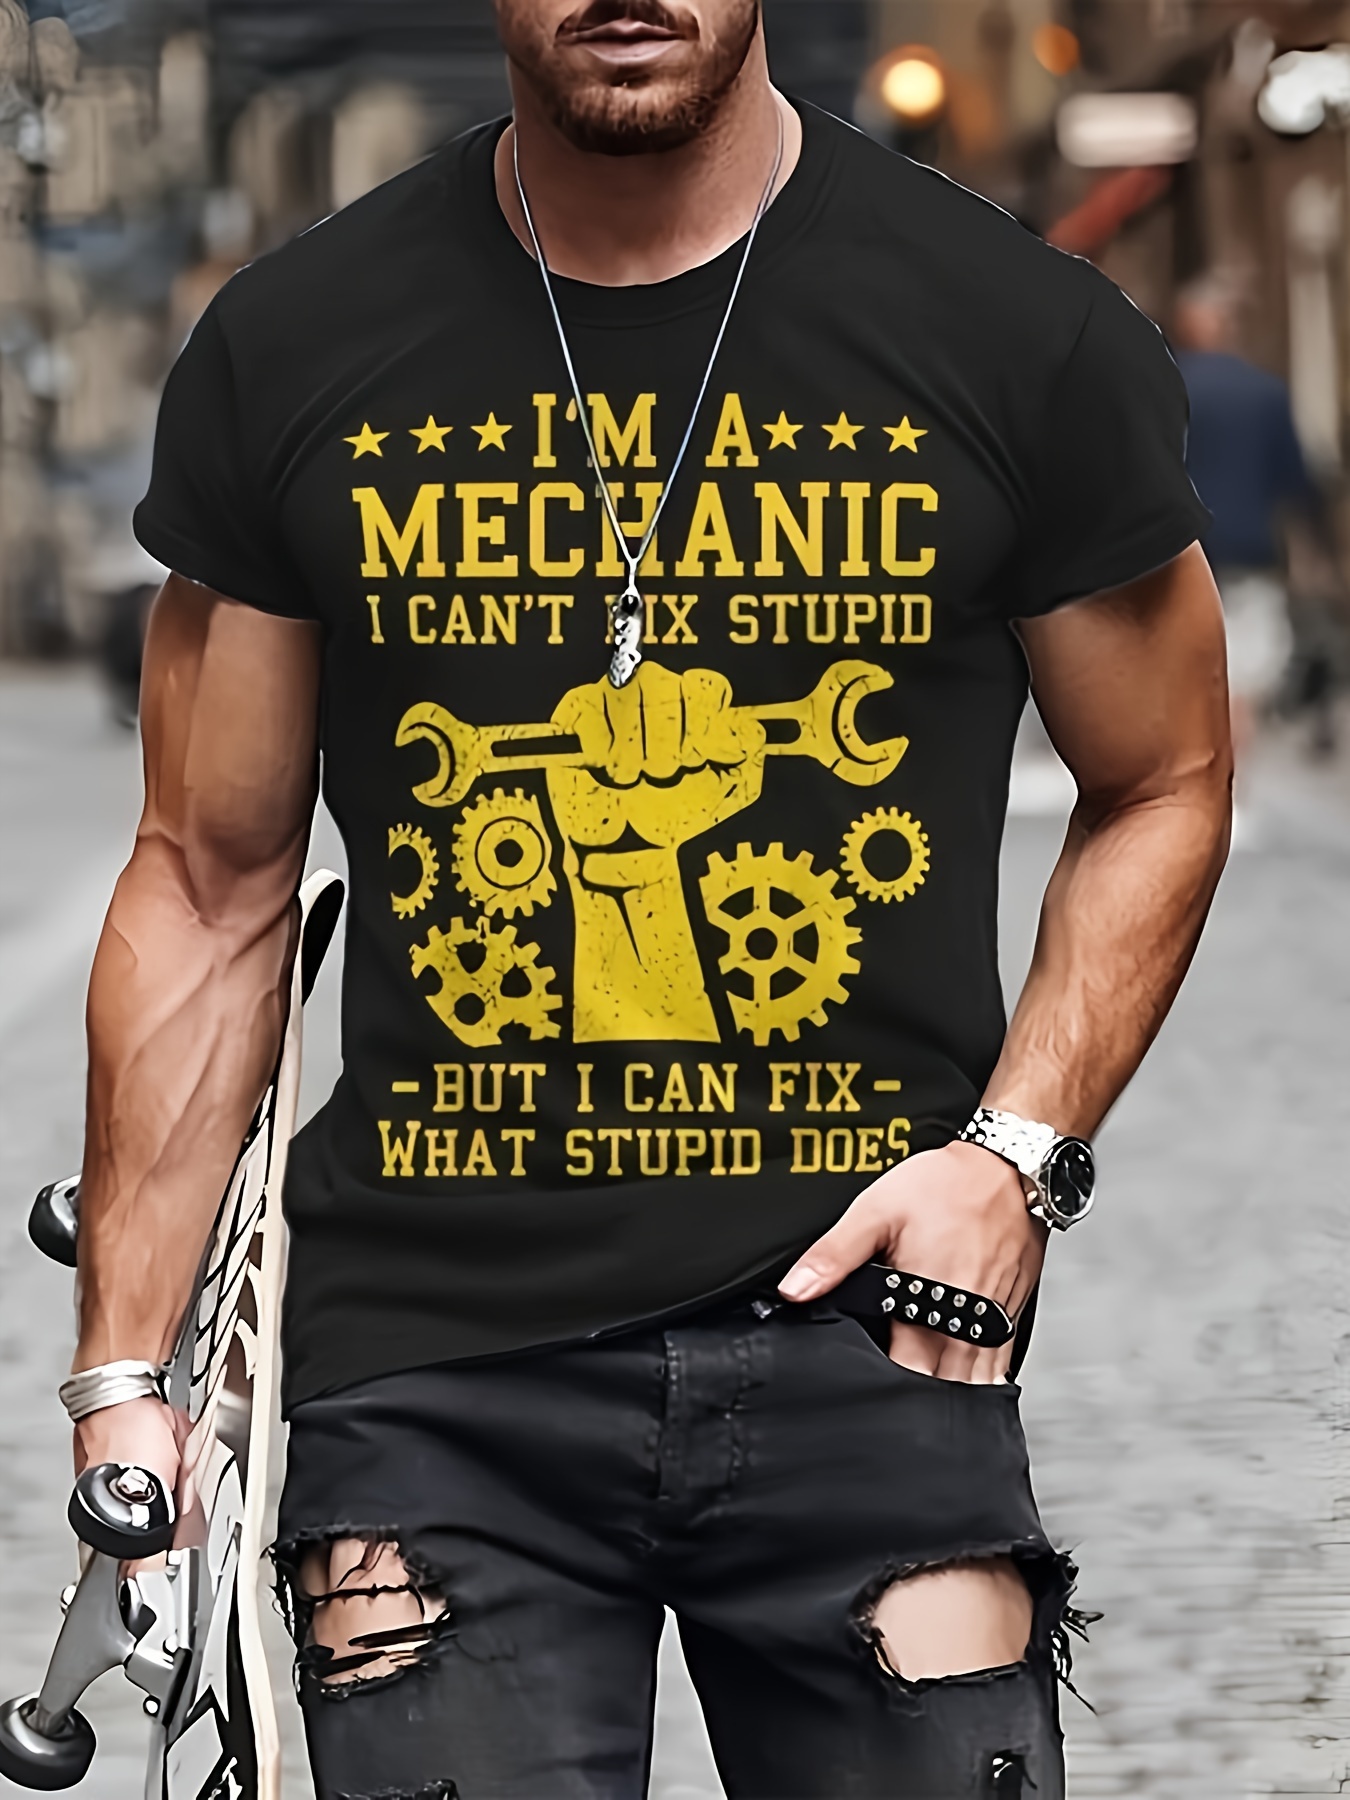 Auto Reparatur Mechaniker Werkzeug retro Geschenk' Männer Premium T-Shirt